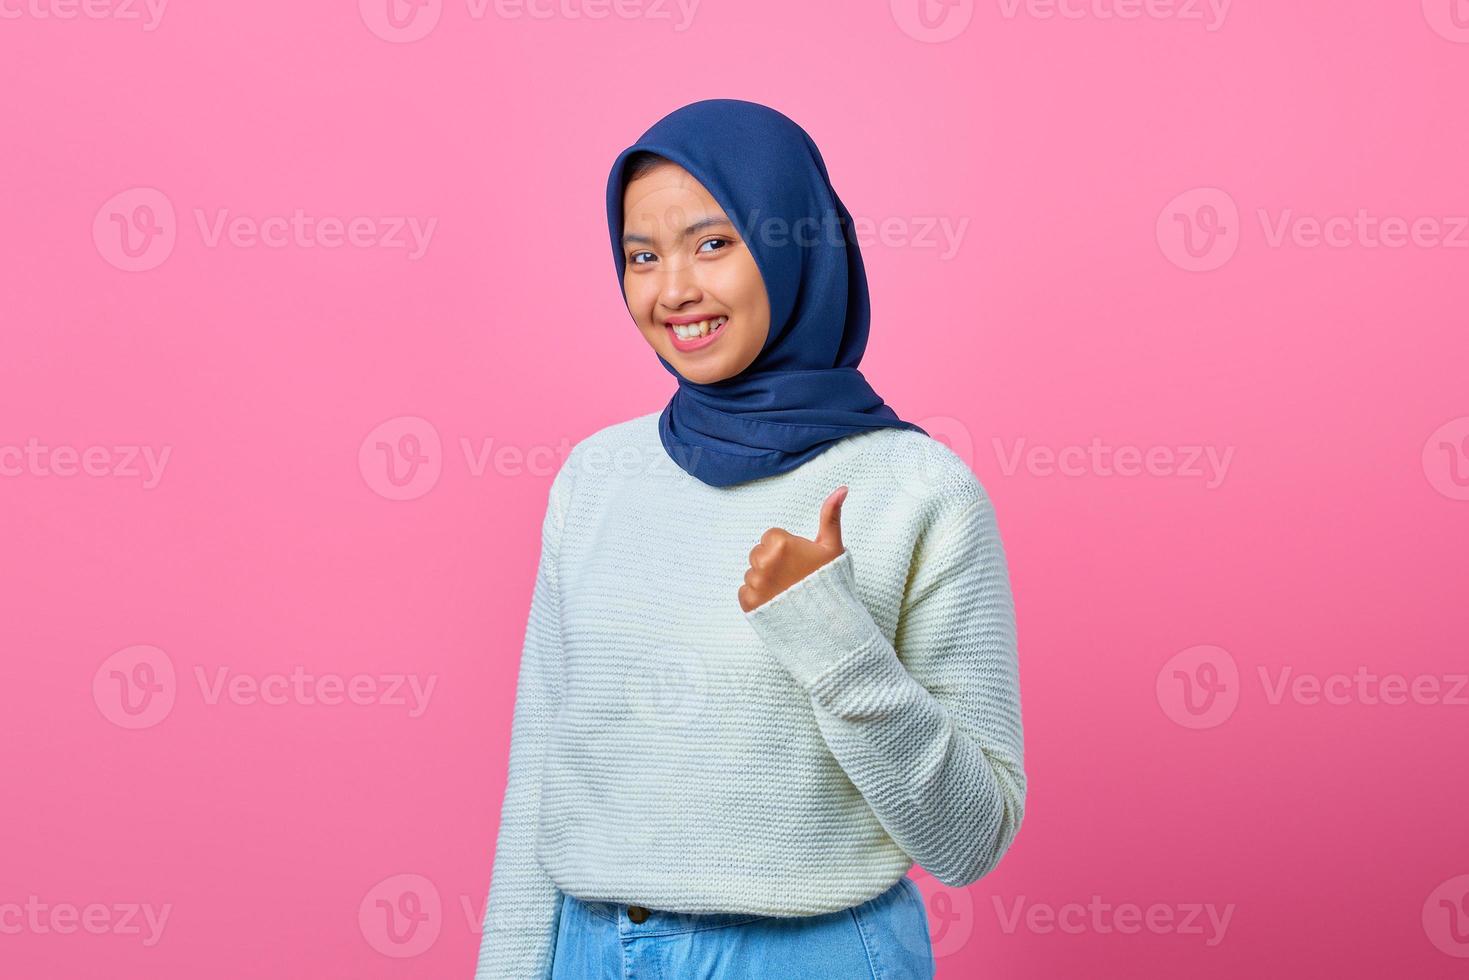 retrato de uma linda mulher asiática sorridente, mostrando os polegares para cima ou um sinal de aprovação foto